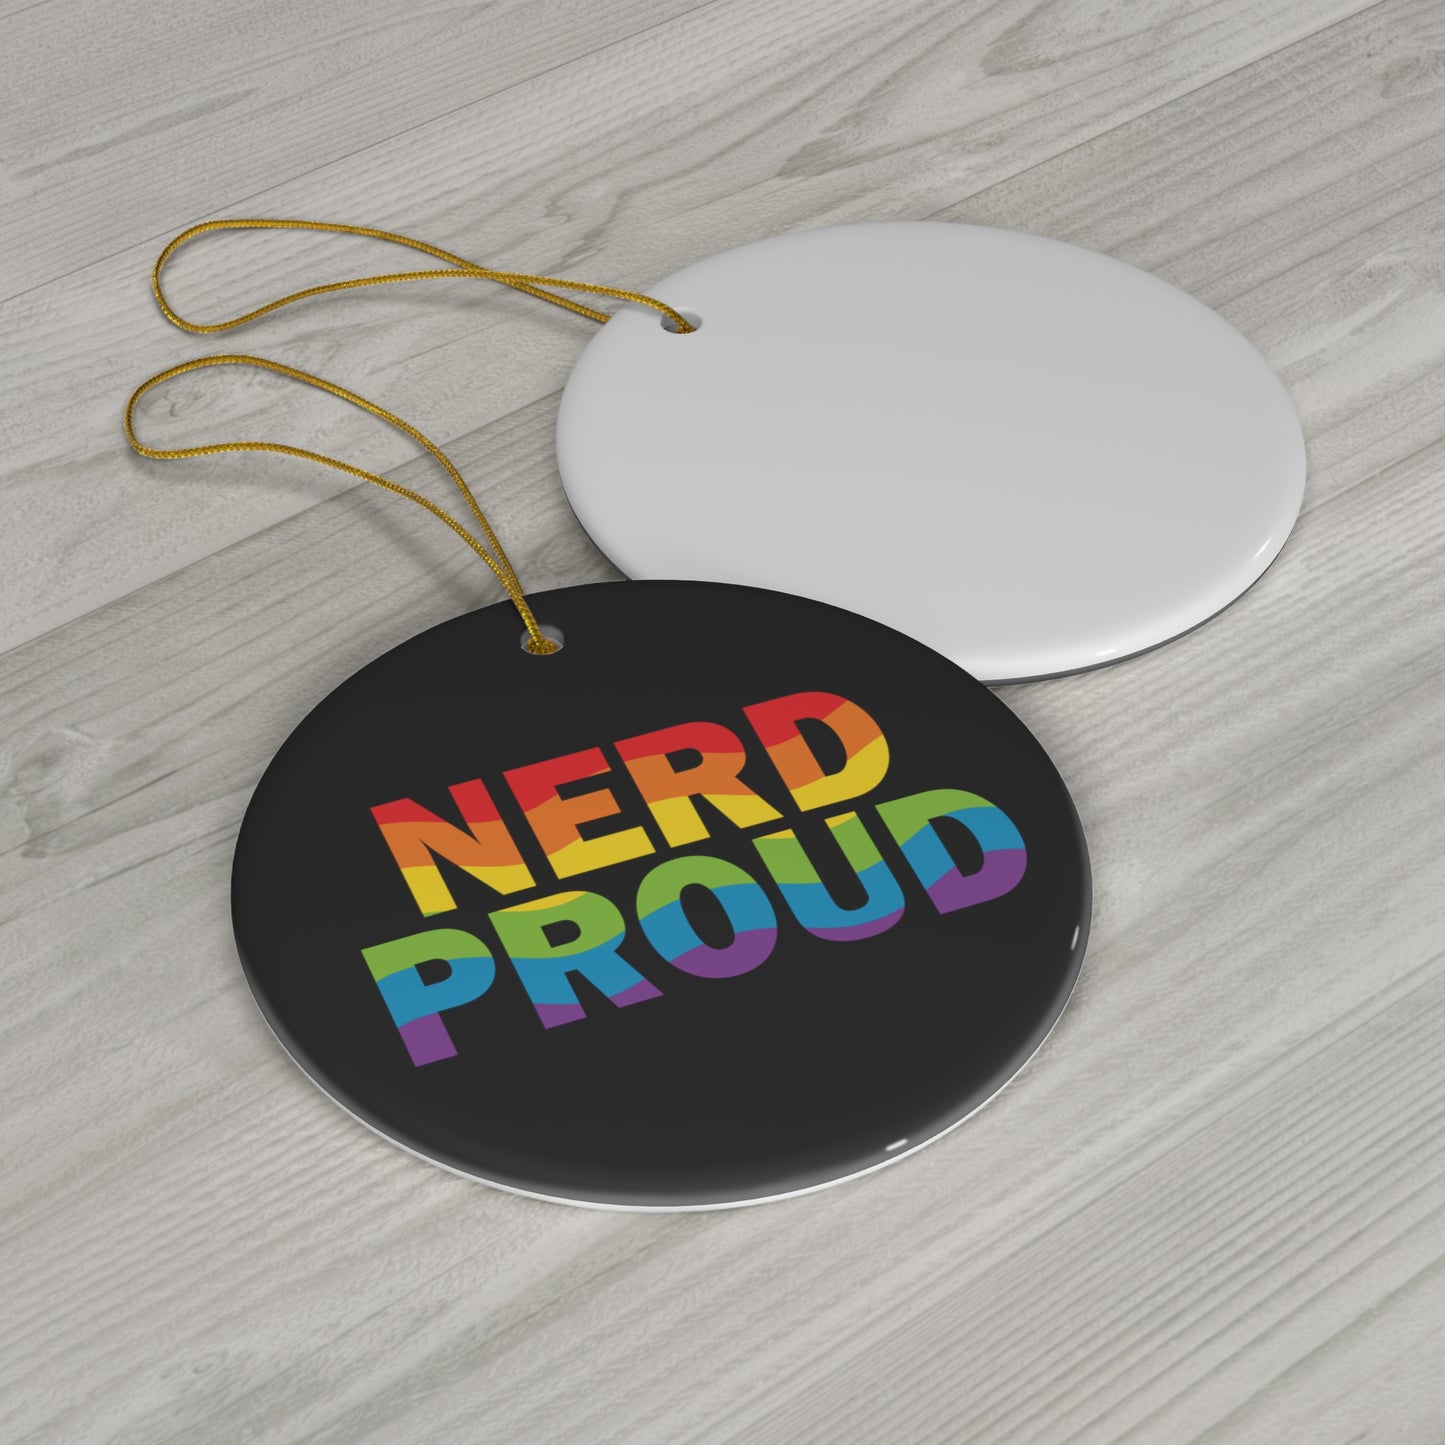 "Nerd Proud" - Ceramic Ornament